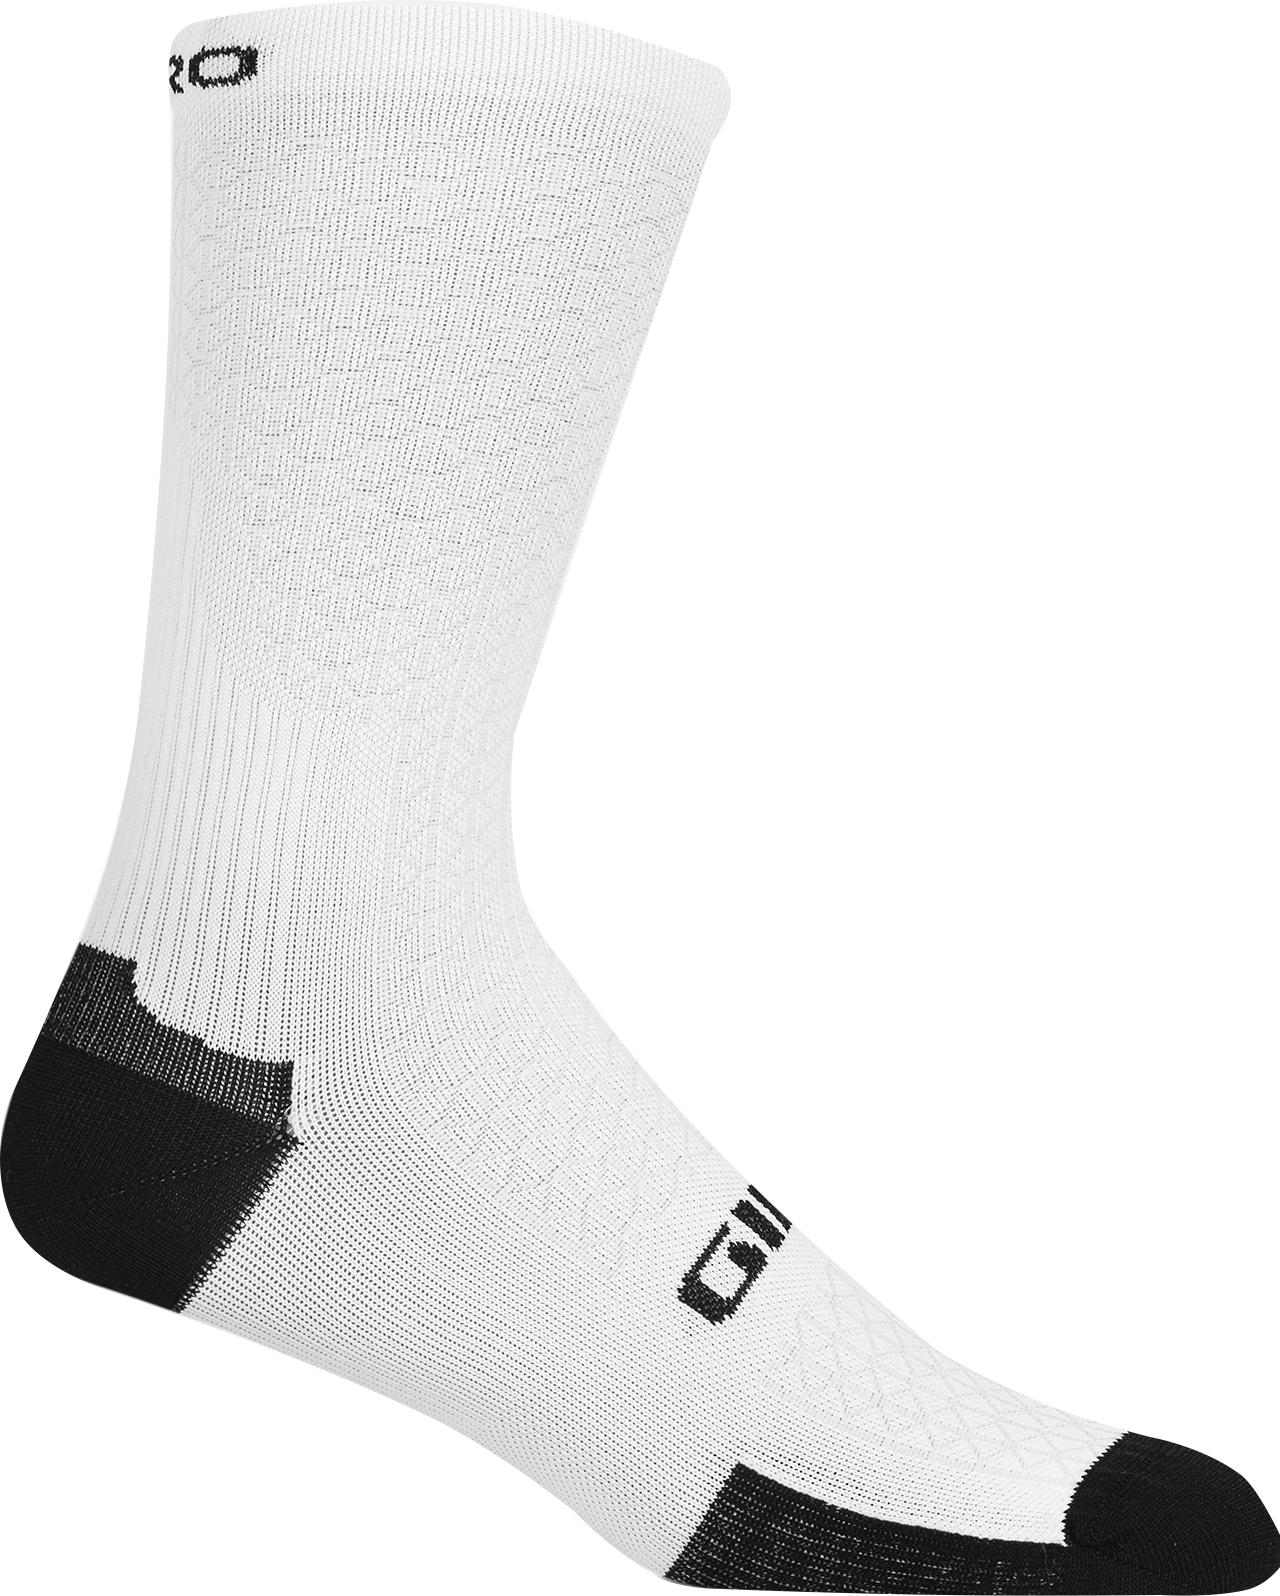 Giro Hrc Team Socks  White/black